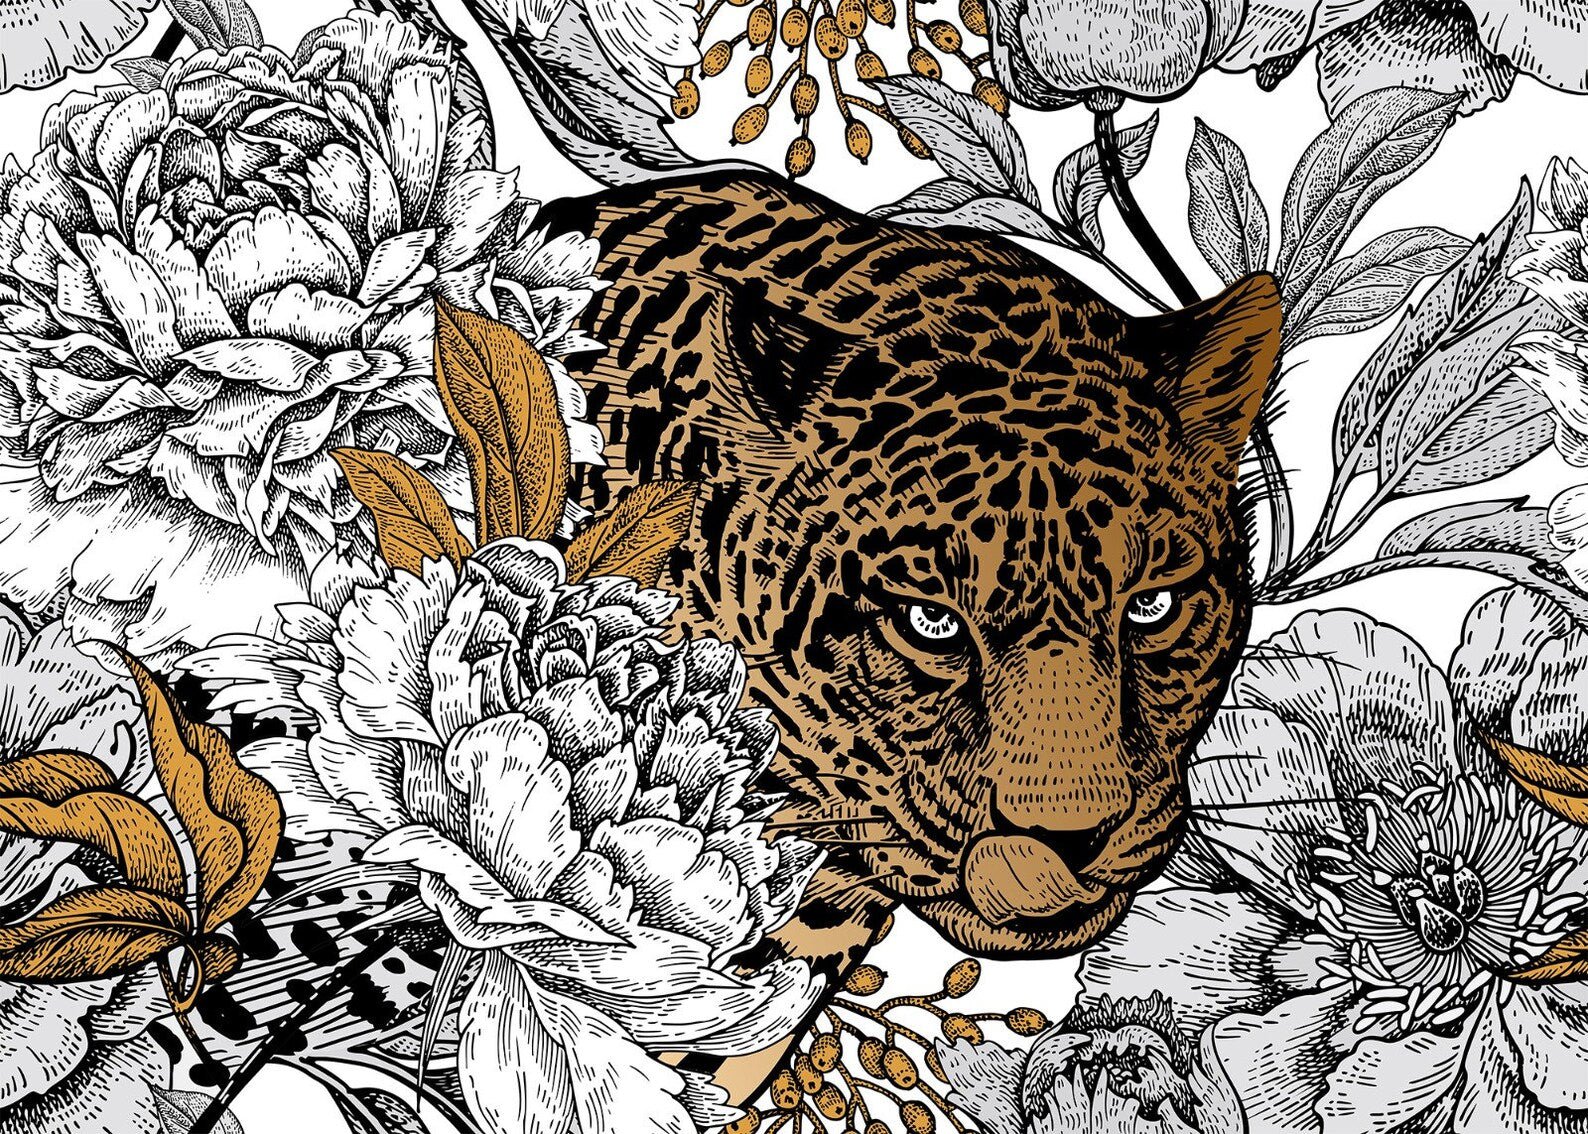 Papier peint panoramique léopard - Kam & Leon